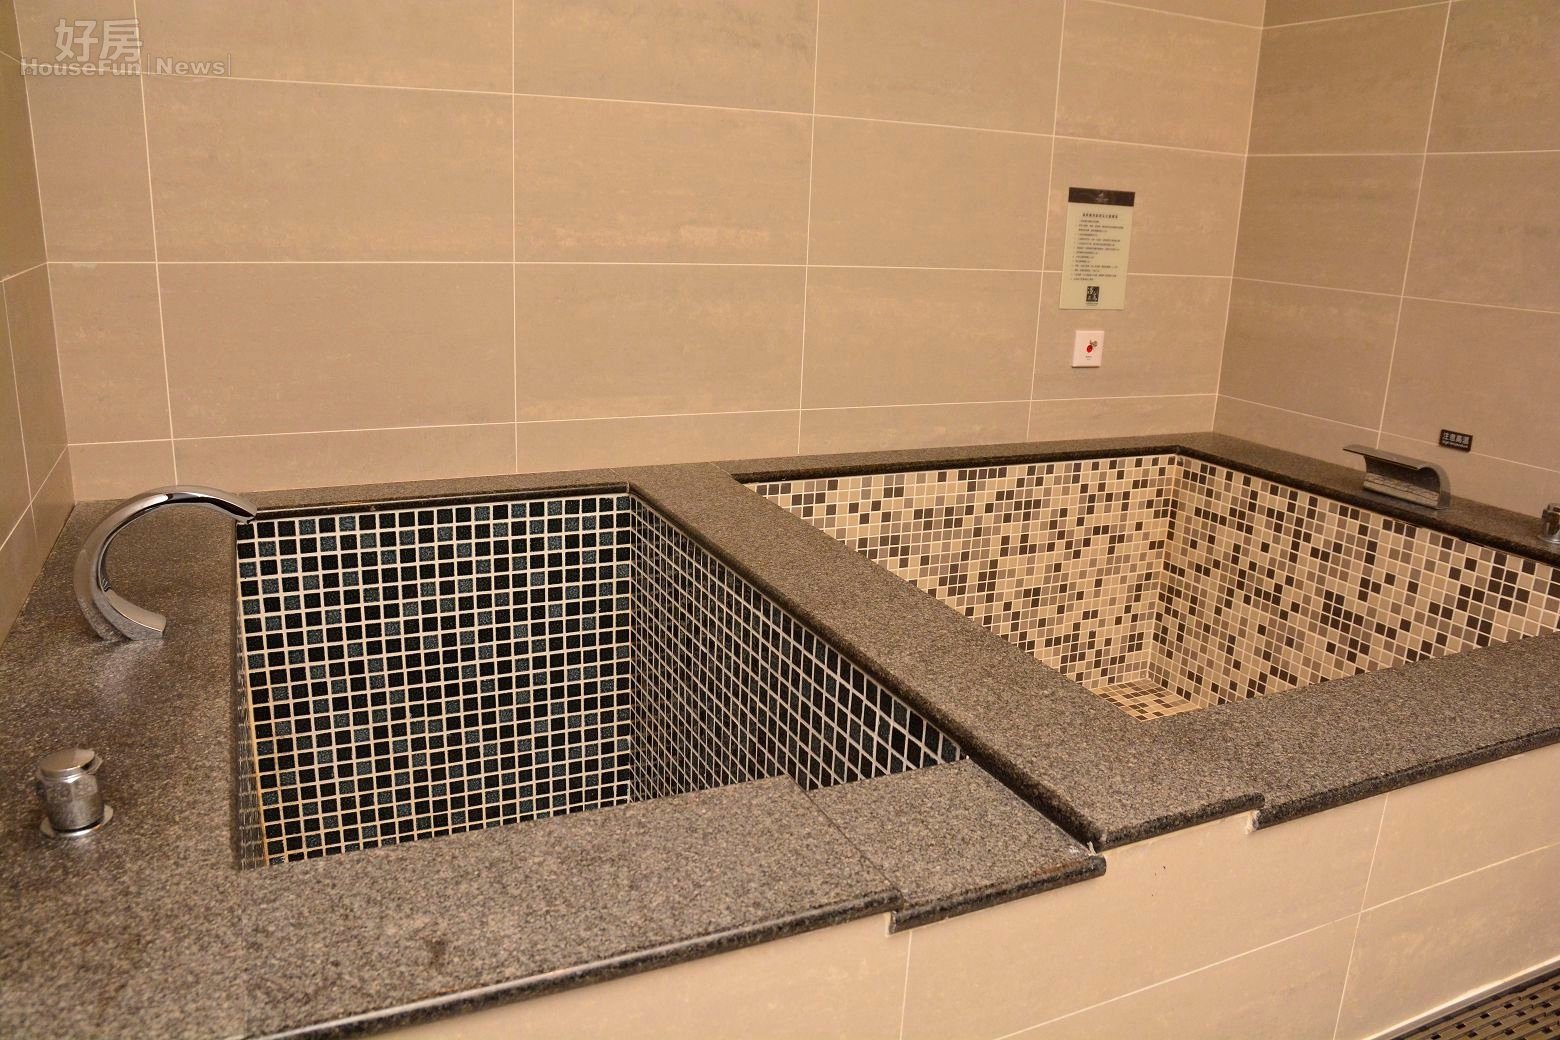 大板根森林遊樂區最新套房冷熱分隔浴缸,可讓遊客同時享受冷泉與溫泉泡澡。(好房News記者 陳韋帆/攝影)